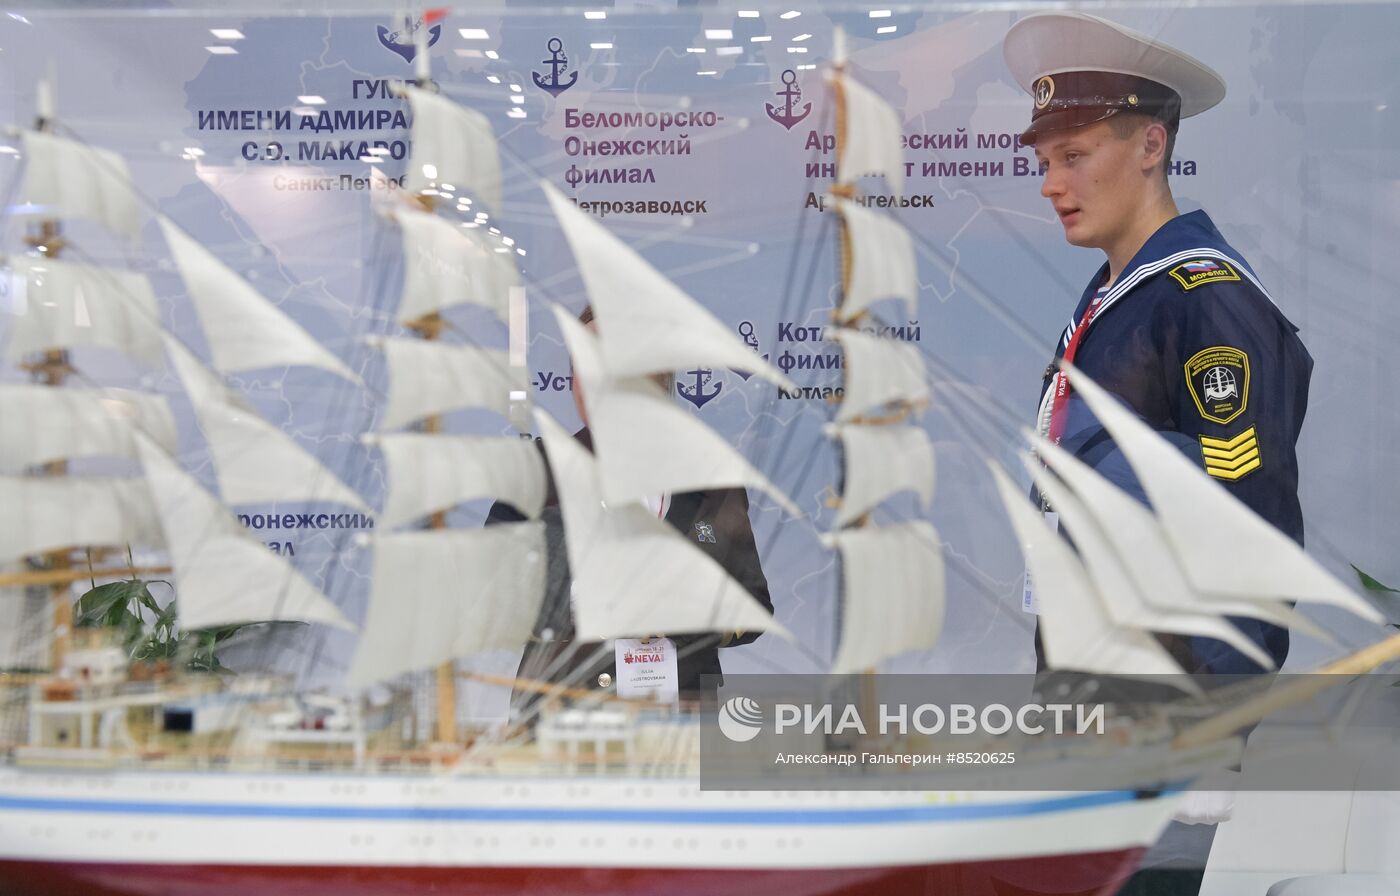 Судостроительная выставка "Нева - 2023" в Санкт-Петербурге